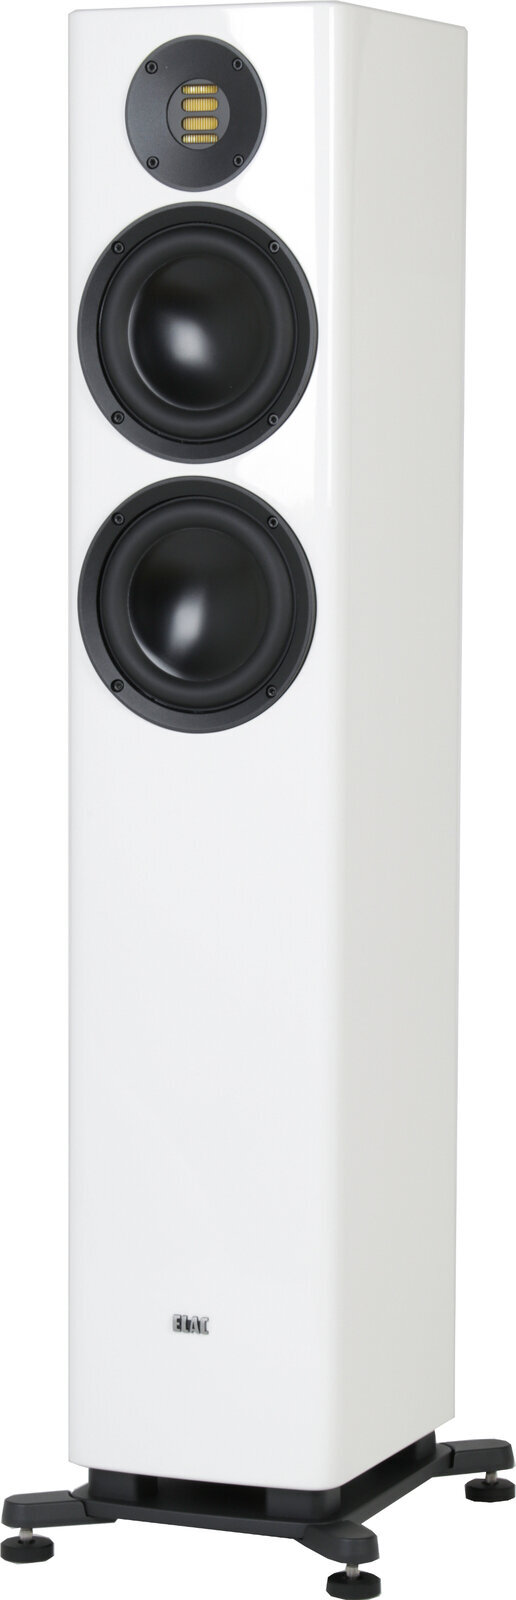 Hi-Fi Floorstanding speaker Elac Solano FS287 White